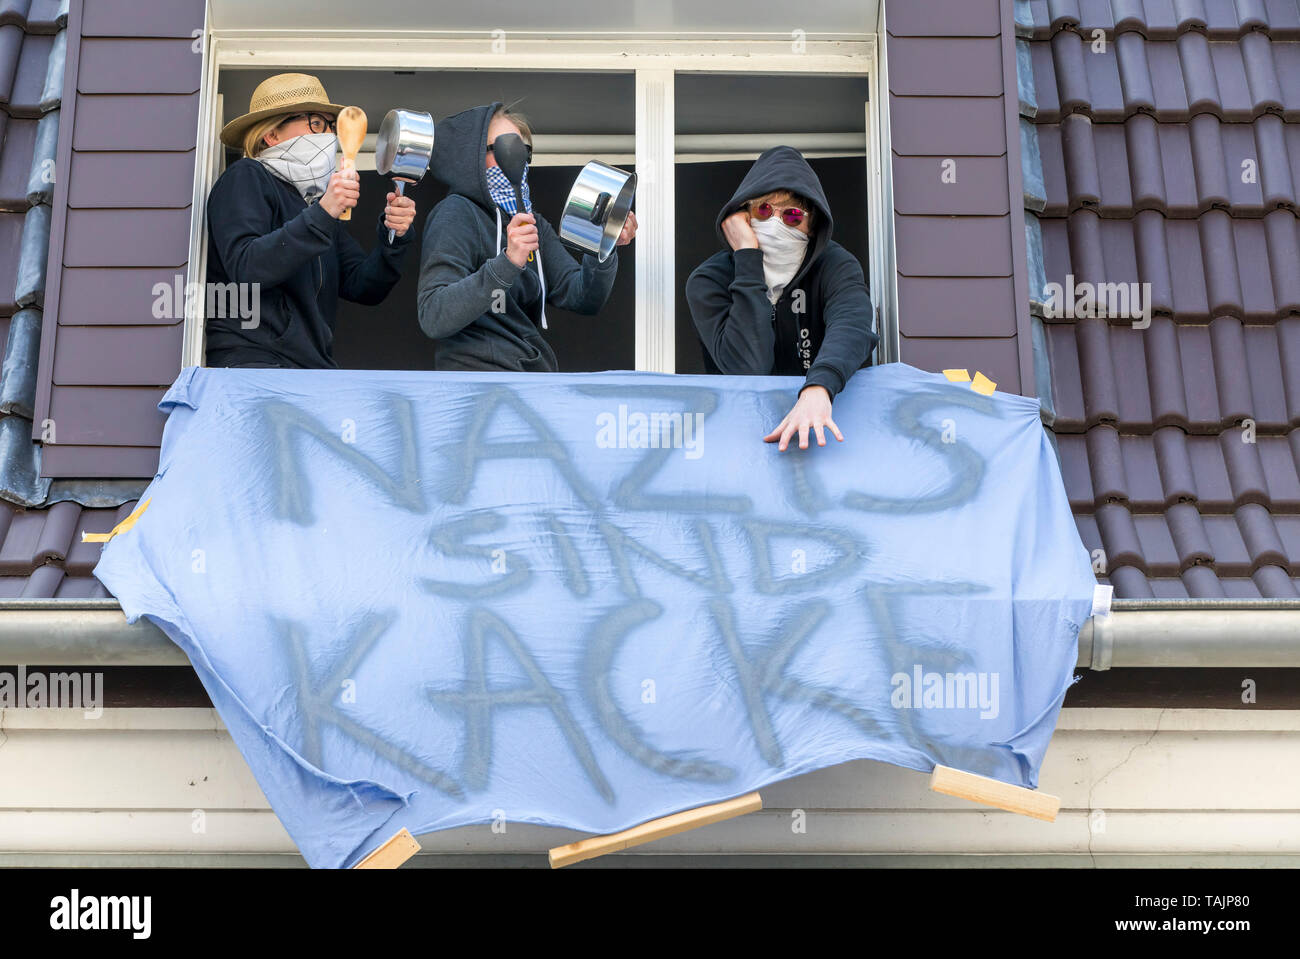 Gegendemonstration der Antifa in einer Demonstration von Rechtsextremen Gruppen in Dortmund unter dem Motto "Europa Erwache, Deutschland, in einem residenti Stockfoto